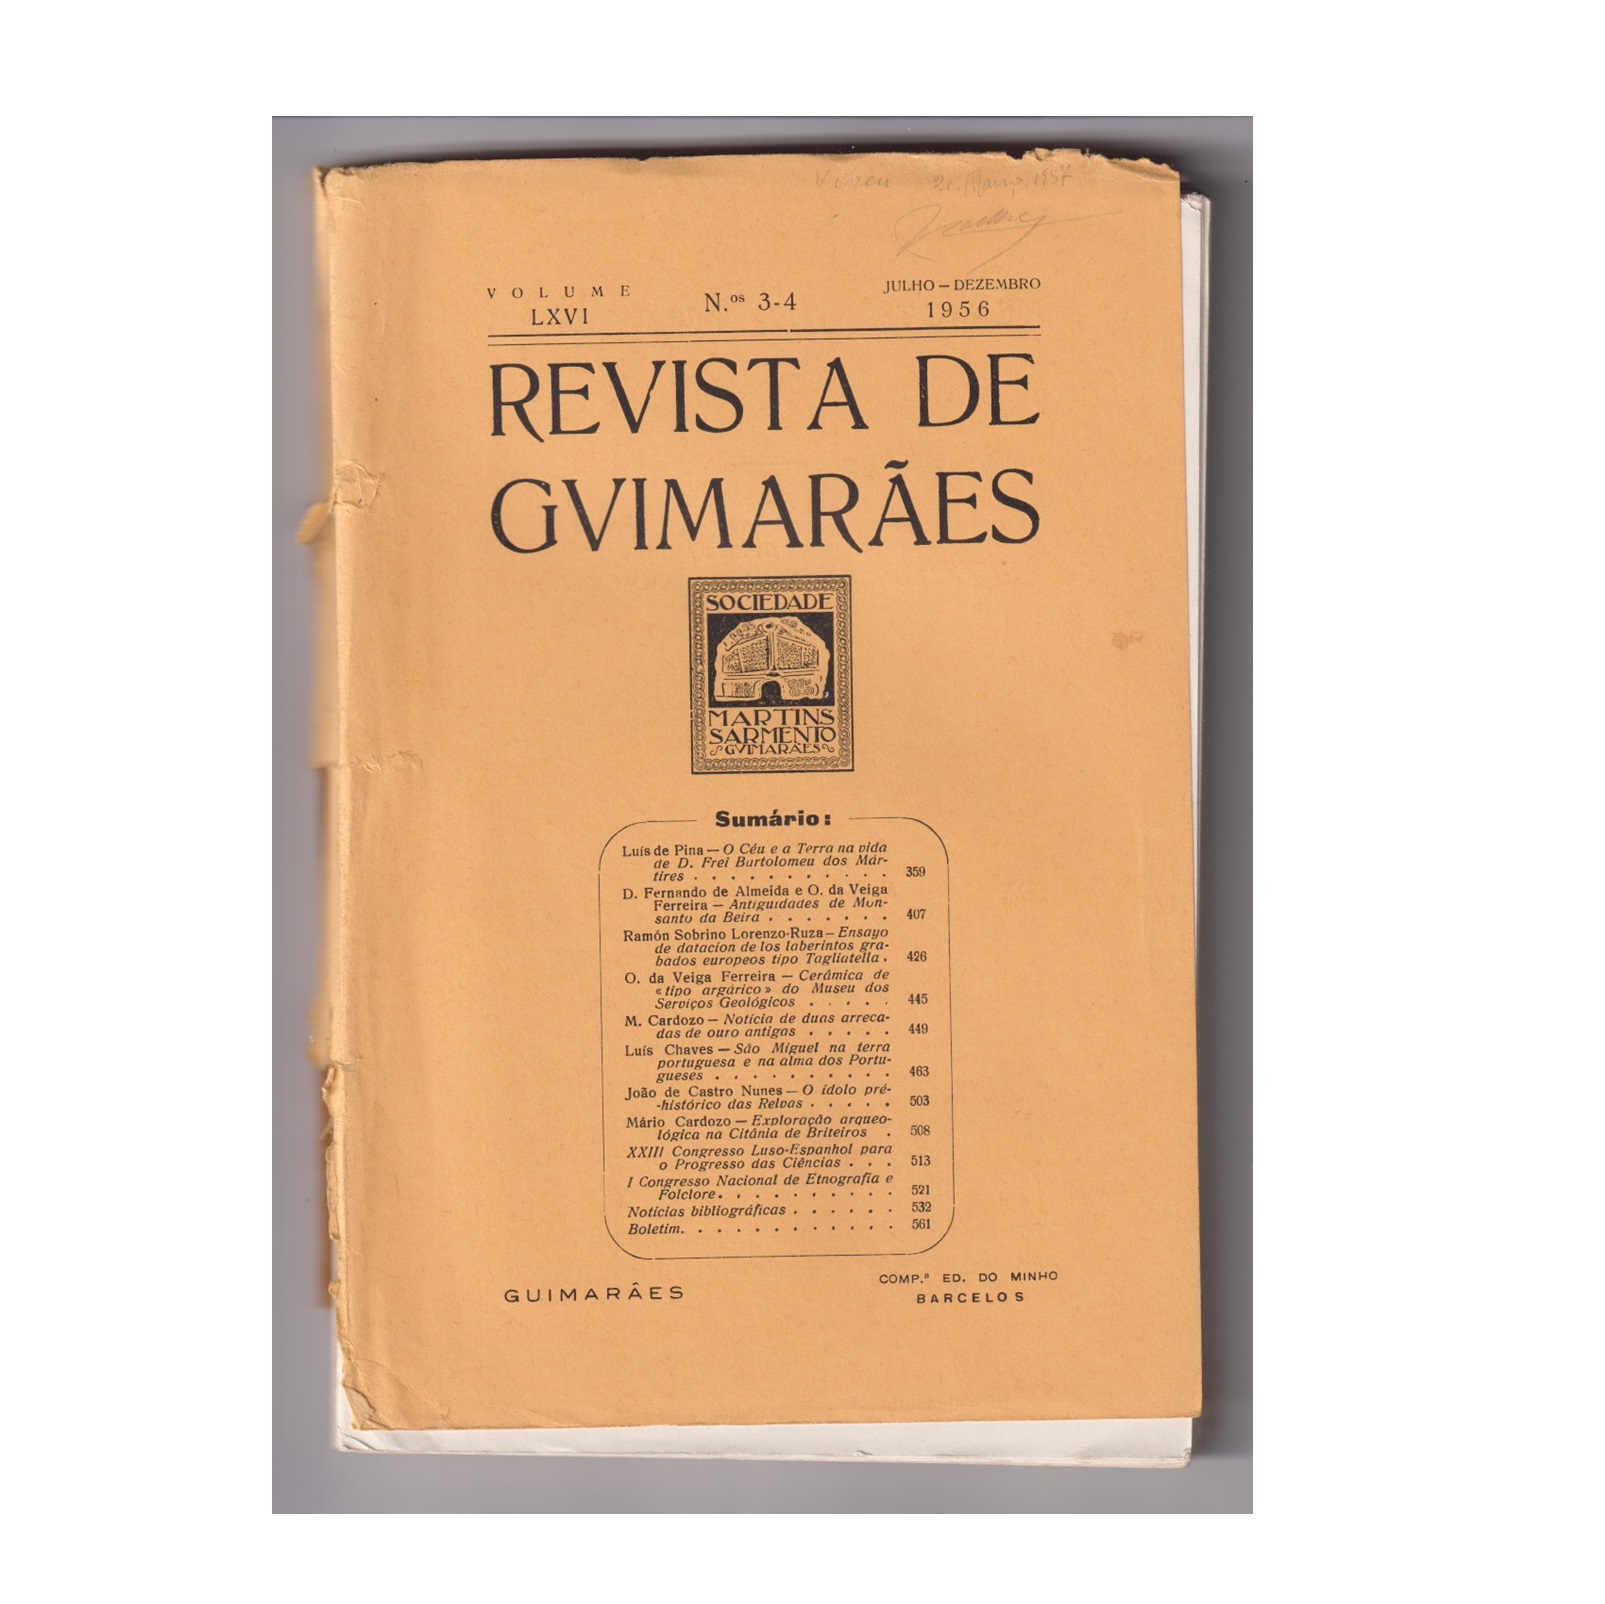 REVISTA DE GUIMARÃES. VOL. LXVI. N.º 3-4, 1956